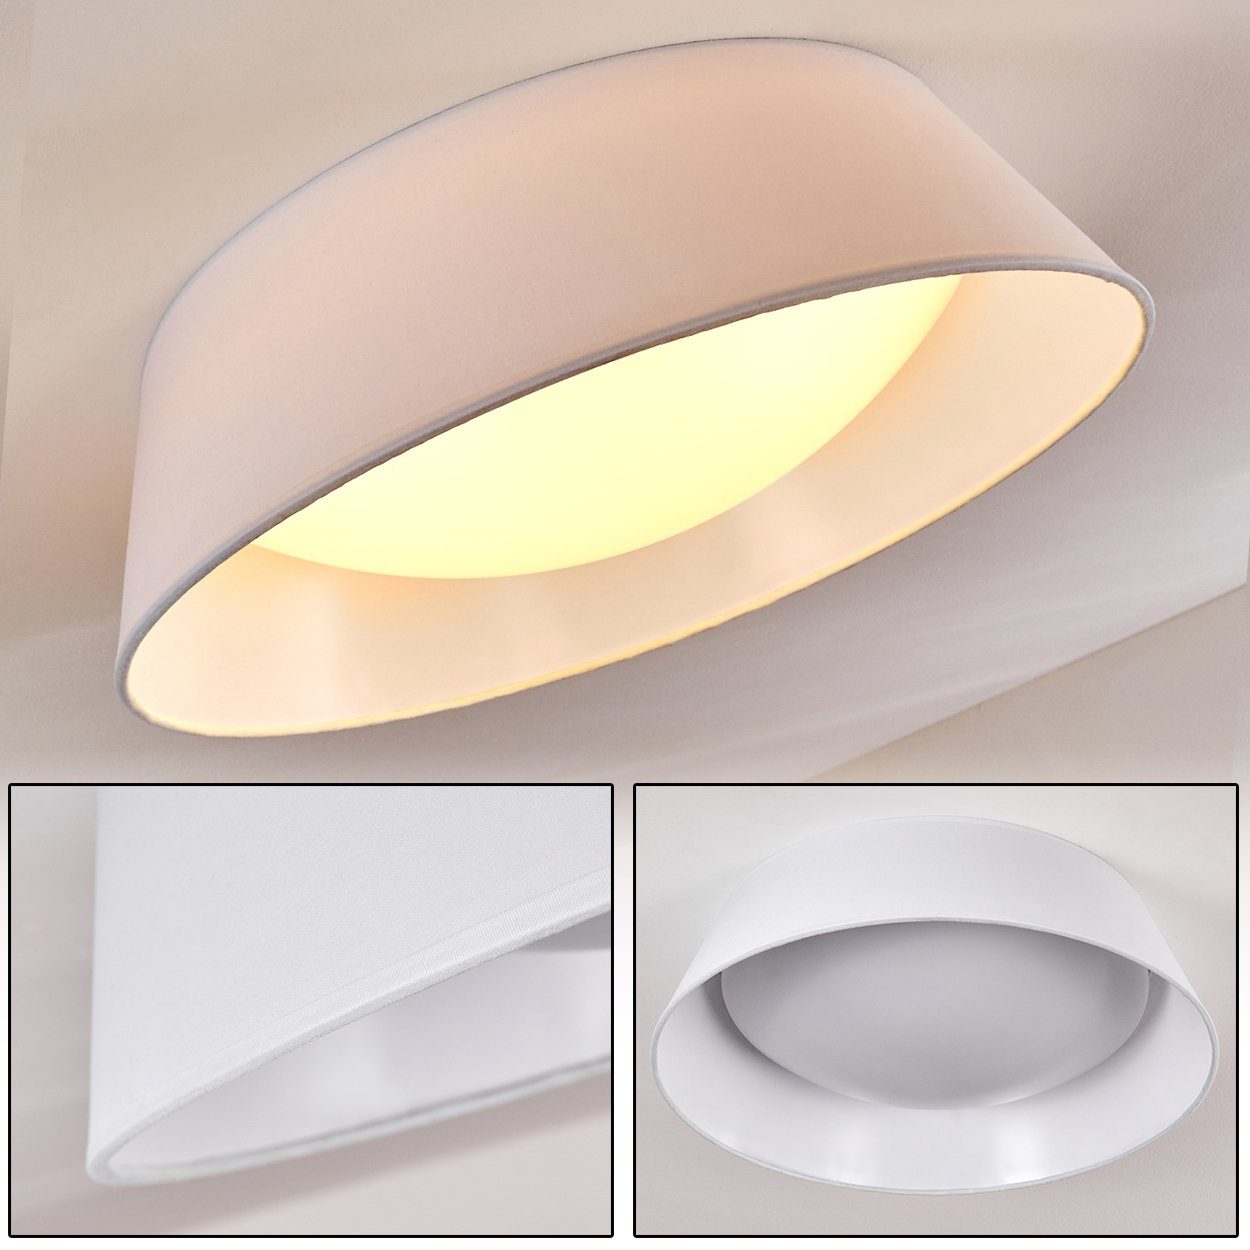 hofstein Deckenleuchte LED Design Wohn Beleuchtung Zimmer Schlaf Stoff weiß Decken Lampen